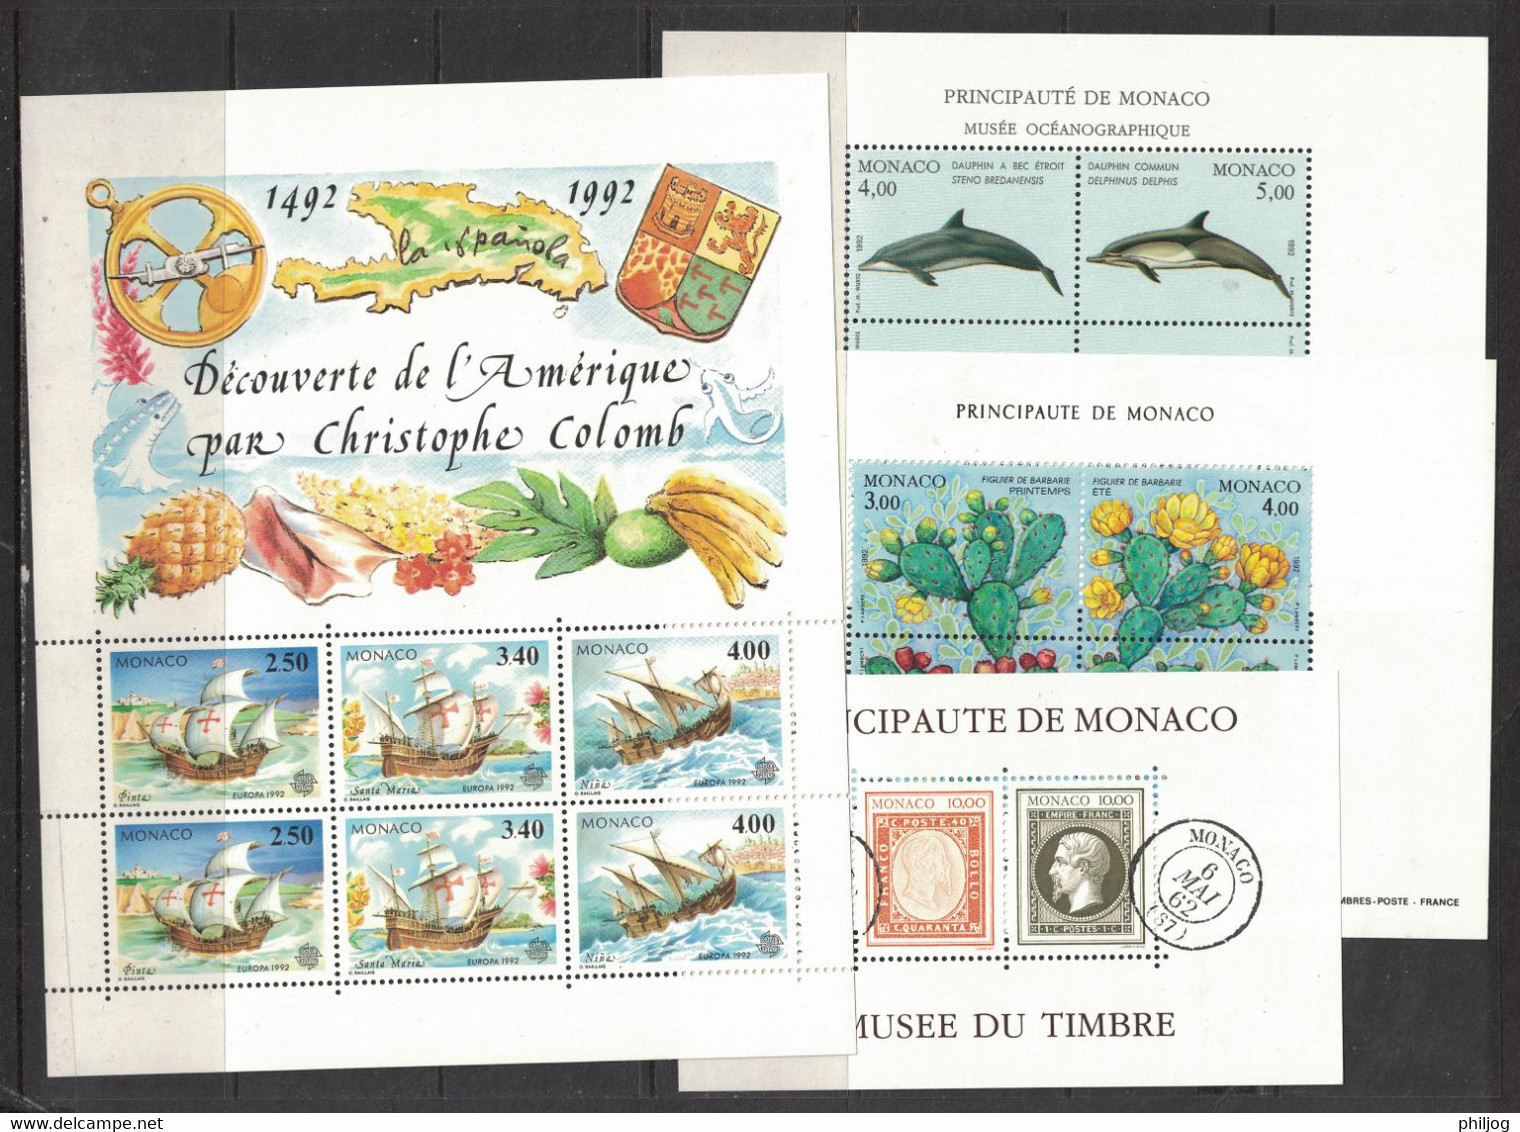 Monaco - Année 1992 Complète - Neuve SANS Charnière - 44 Timbres Du 1810 à 1853 + Préo, 1 BF,  2 Carnets - MNH Year 1992 - Annate Complete